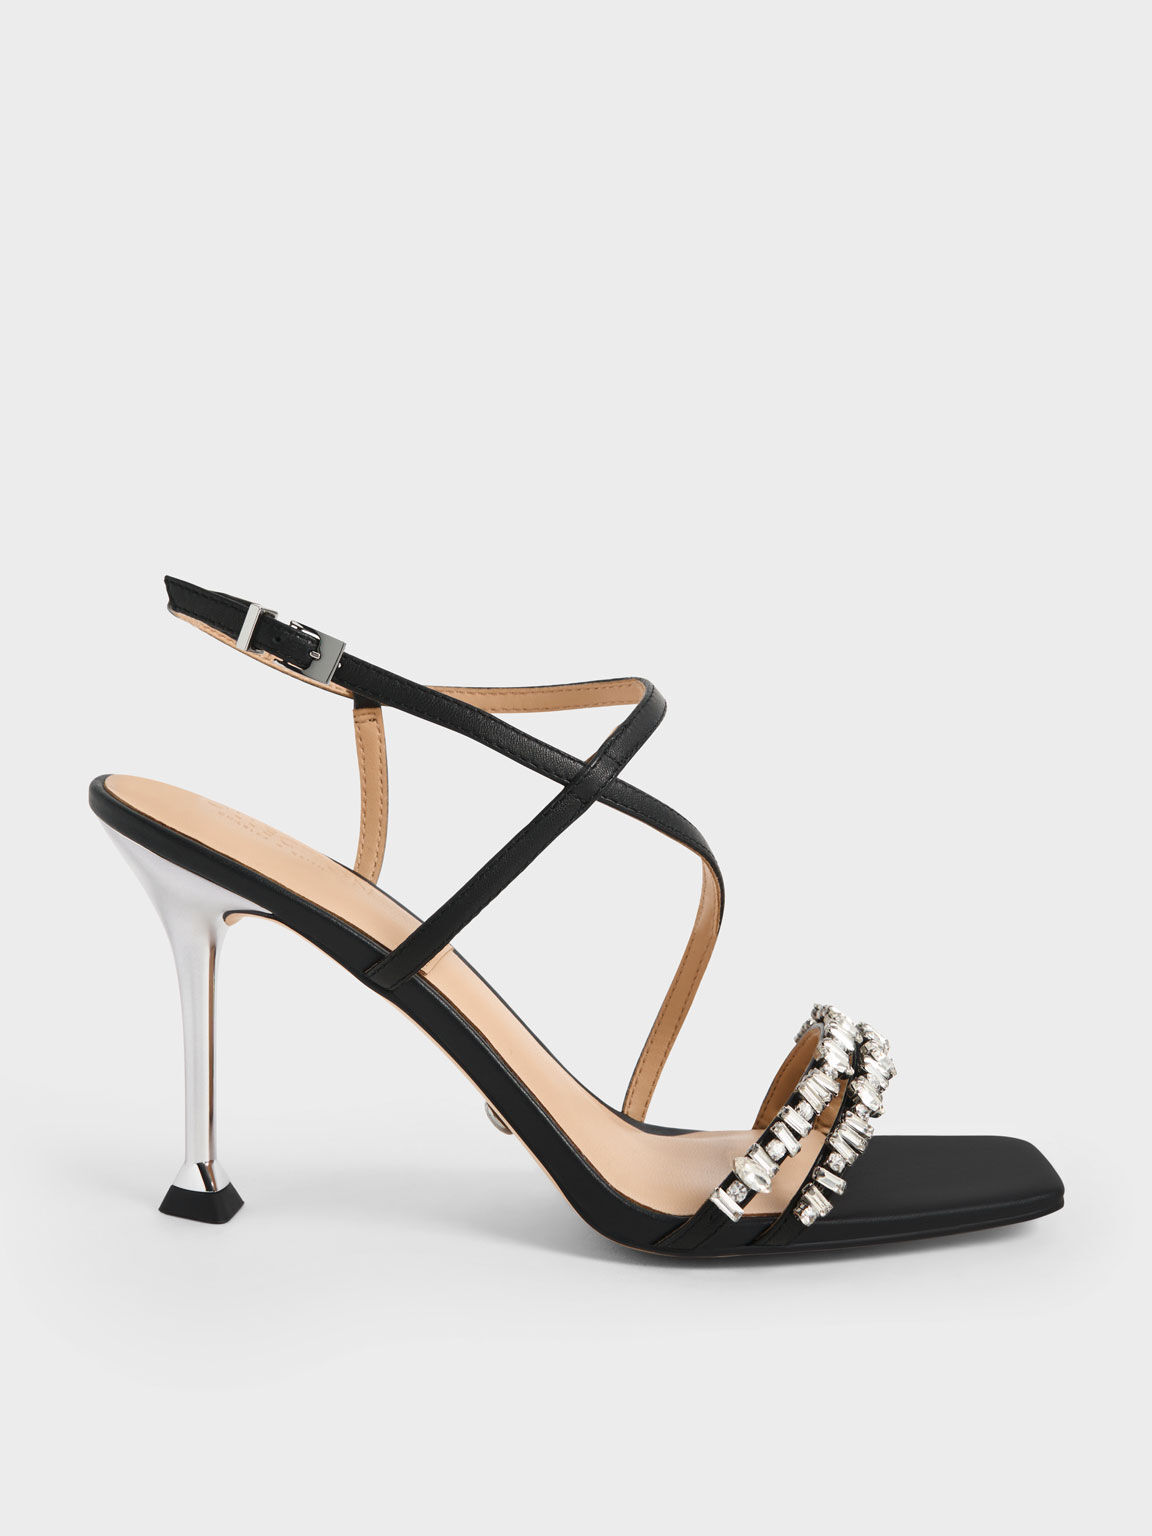 Satin Gem-Embellished Strappy Sandals, Black, hi-res